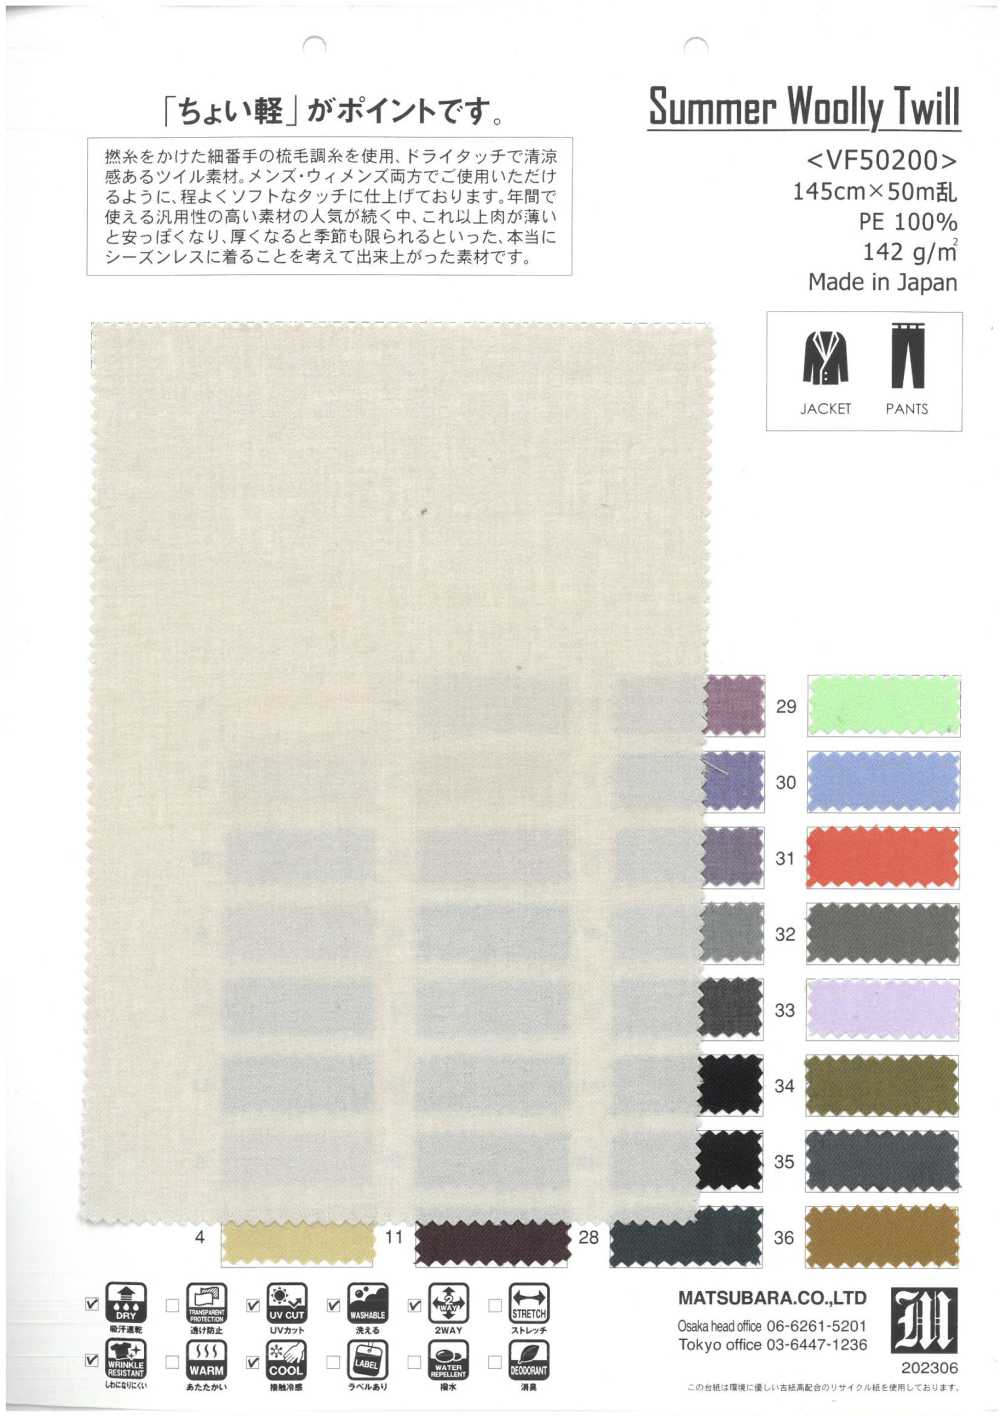 VF50200 Sommerlicher Wolltwill[Textilgewebe] Matsubara